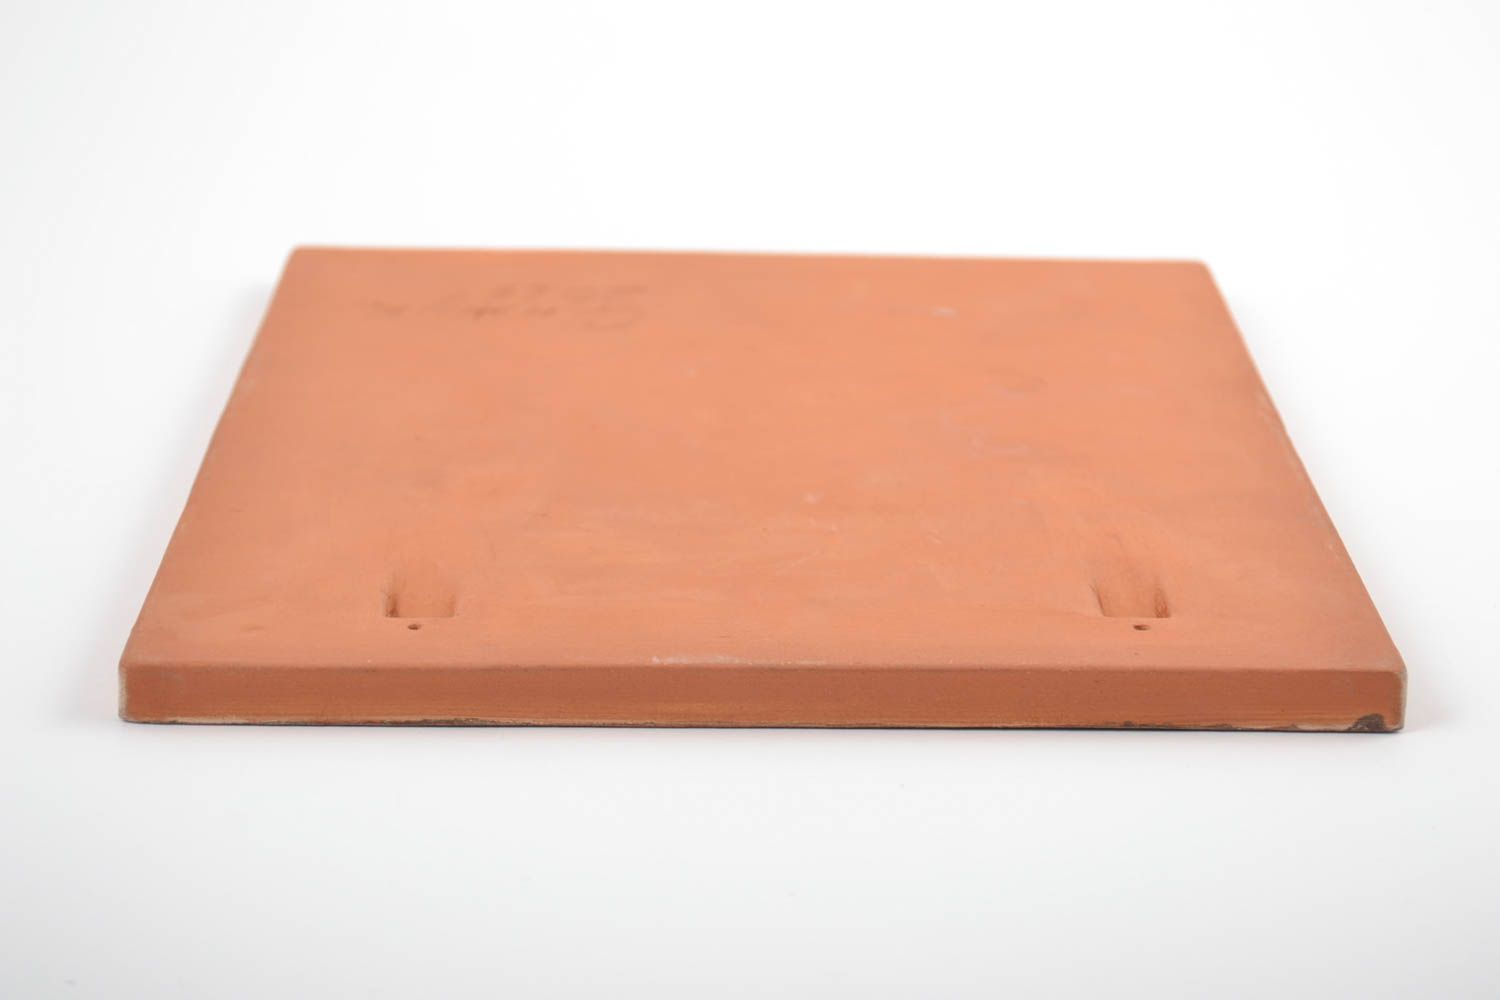 Керамическая плитка расписанная ангобами хэнд мэйд с изображением казака Мамая фото 5